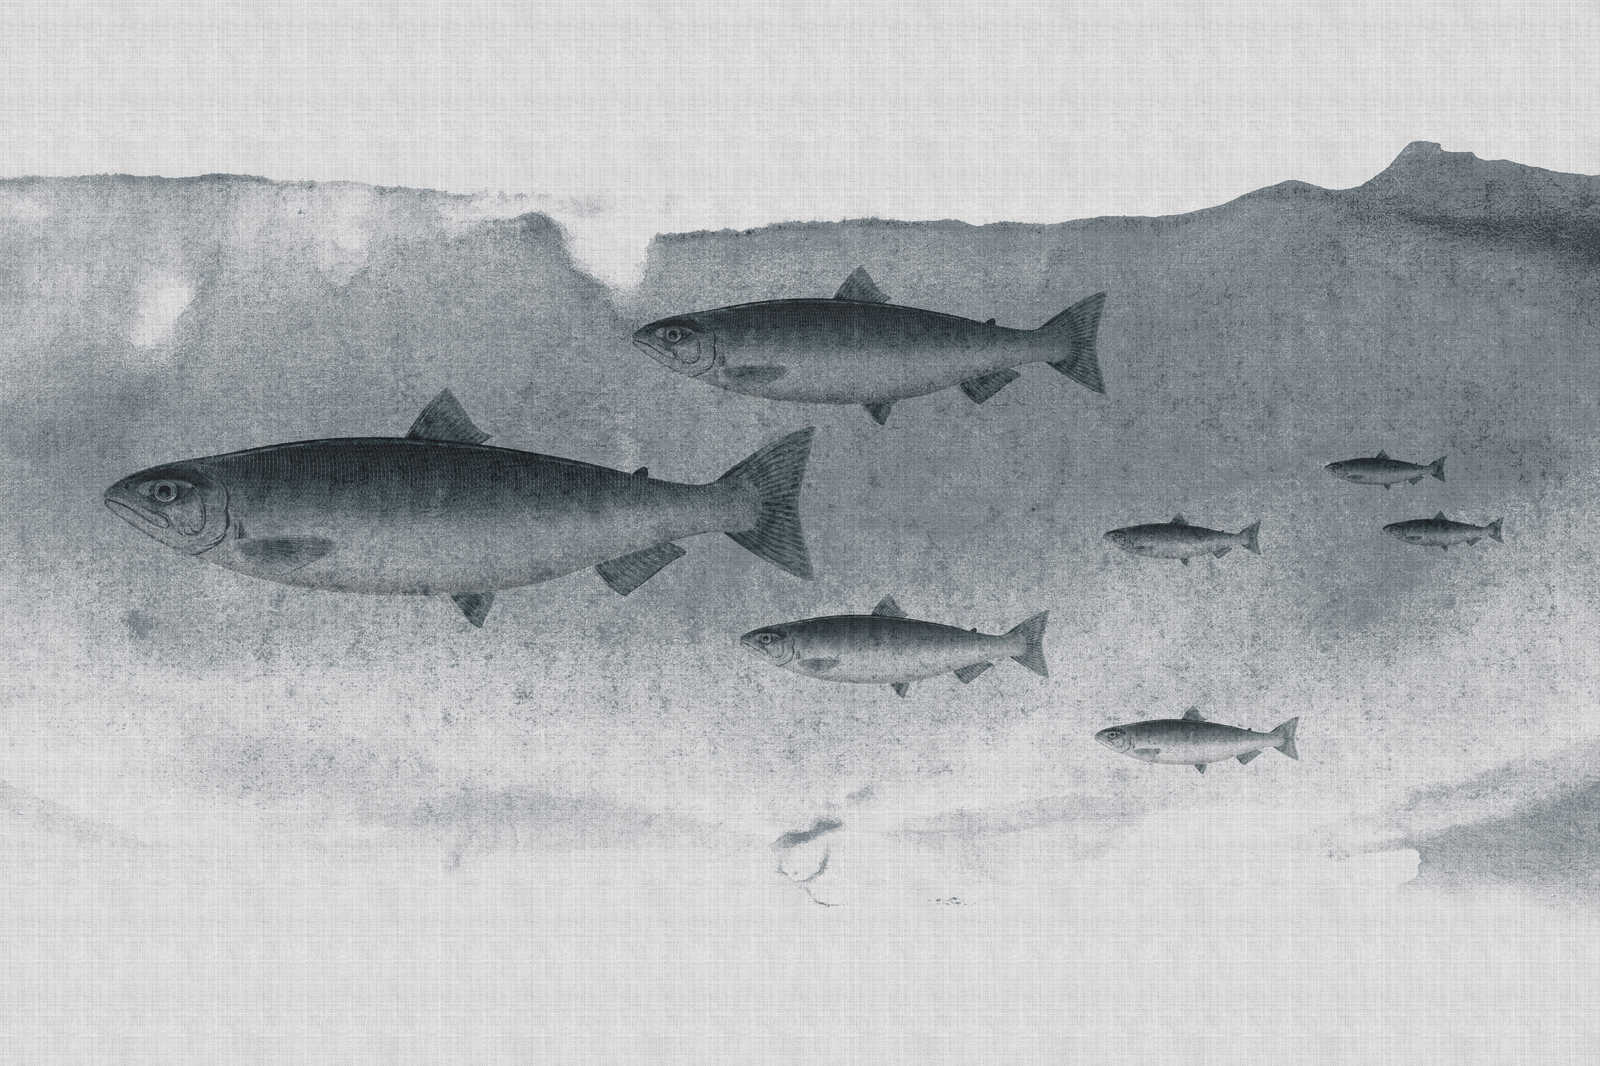             Into the blue 3 - Aquarelle de poisson en gris comme toile de lin structure naturelle - 0,90 m x 0,60 m
        